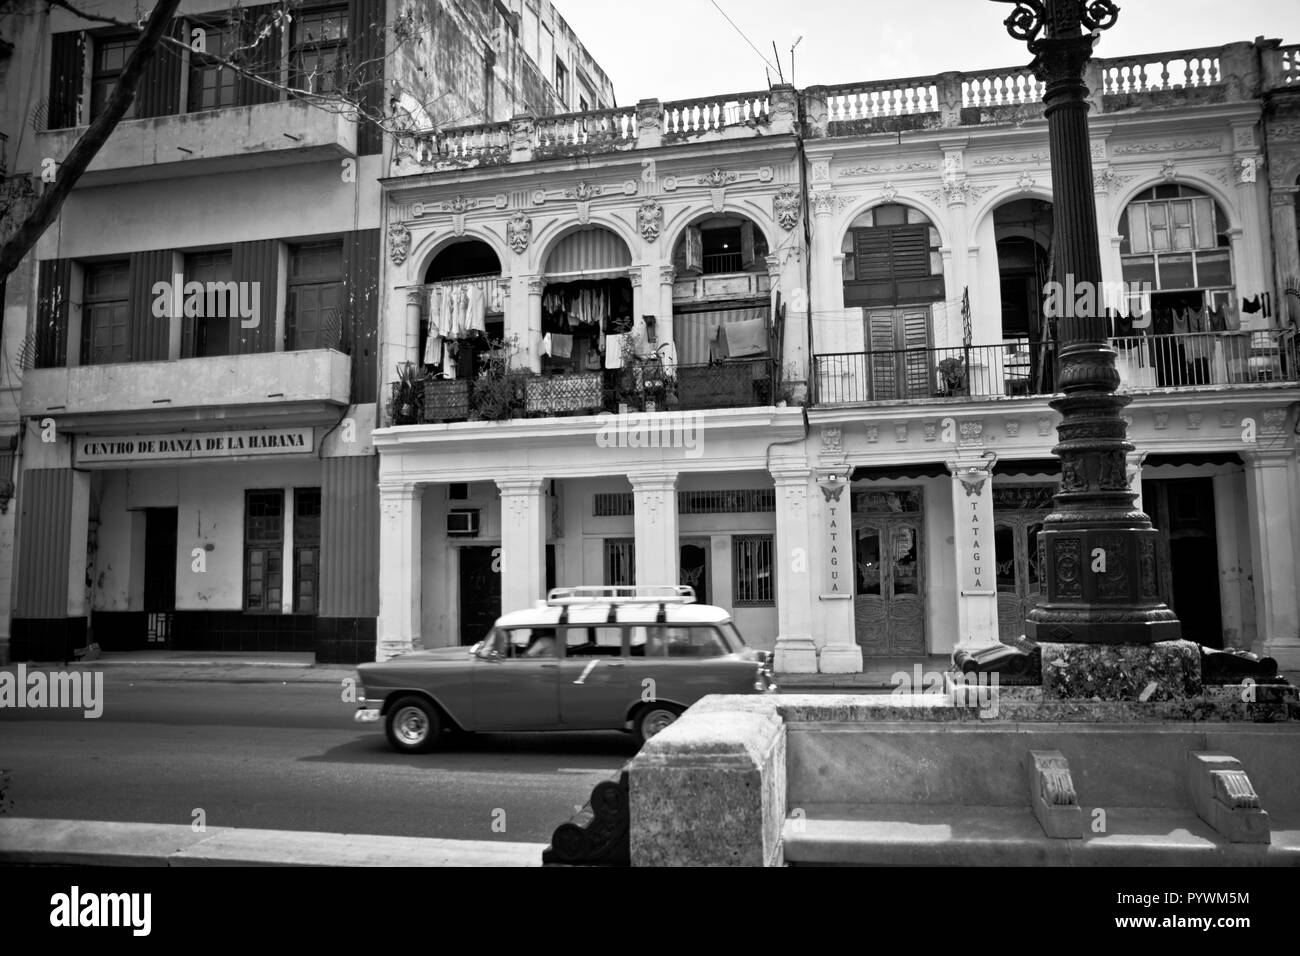 La Havane, Cuba, île des Caraïbes sous le régime communiste. Il a les plages de sable blanc, avec des champs de tabac, cigares et légendaire rhum. Banque D'Images